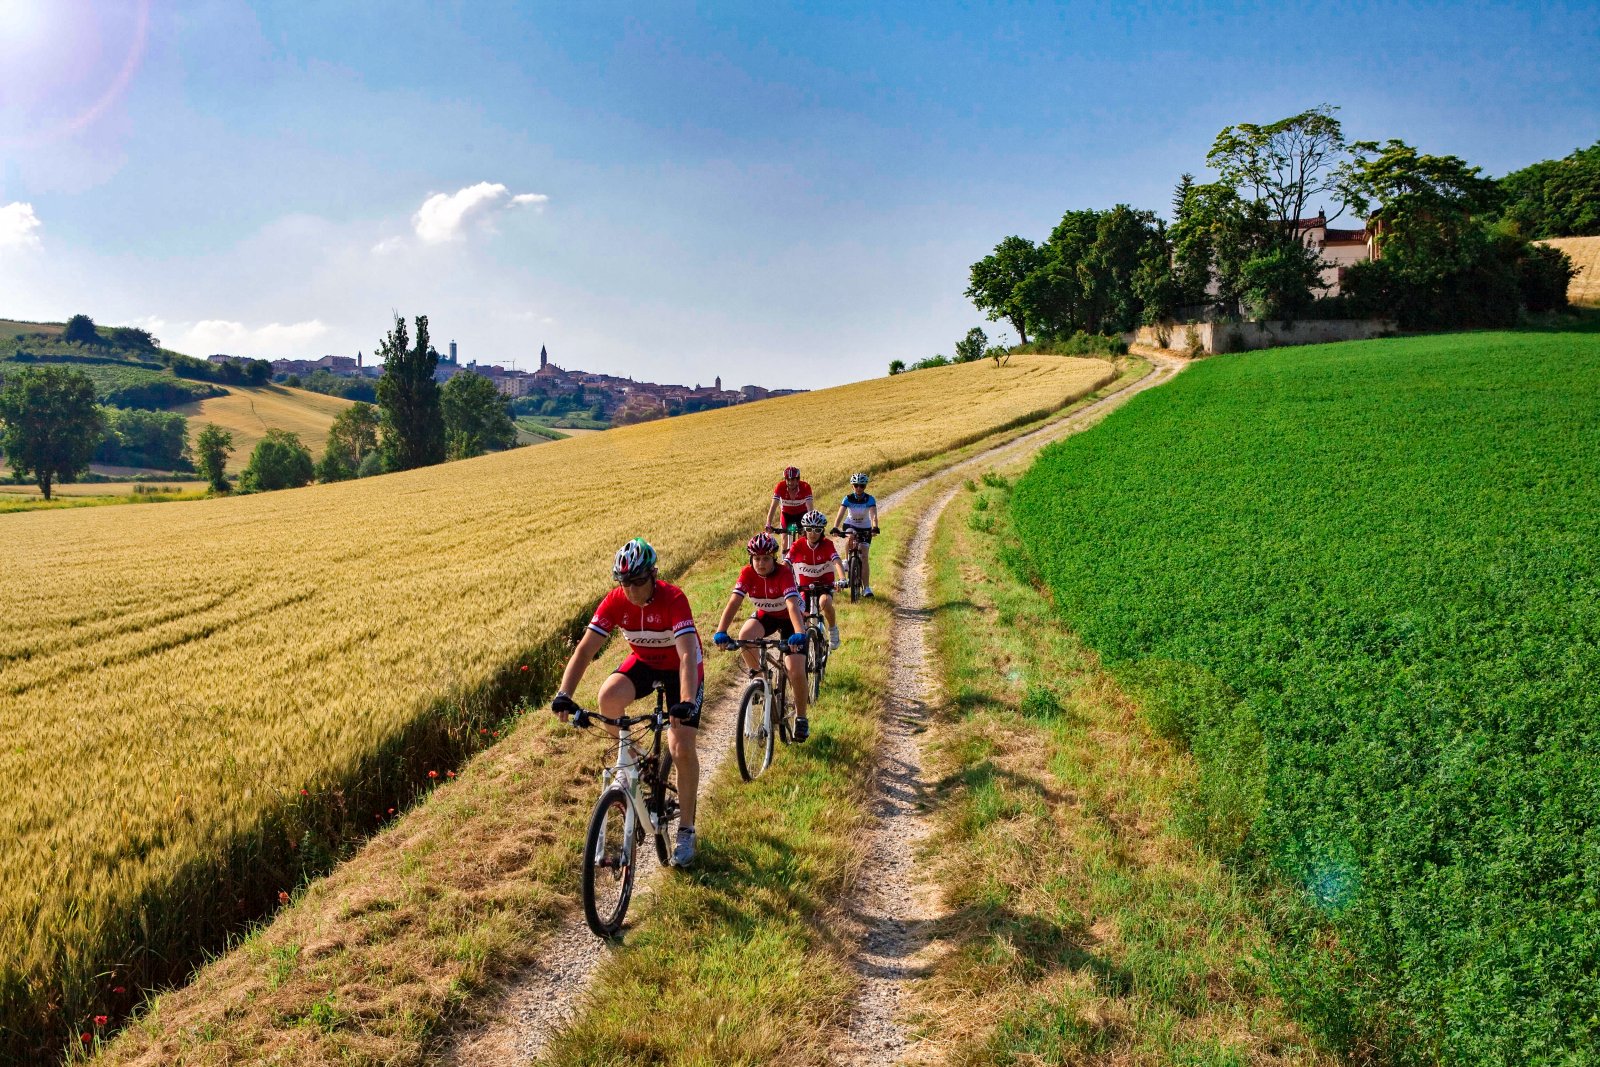 Monferrato, wine, and Fausto Coppi e-bike tour